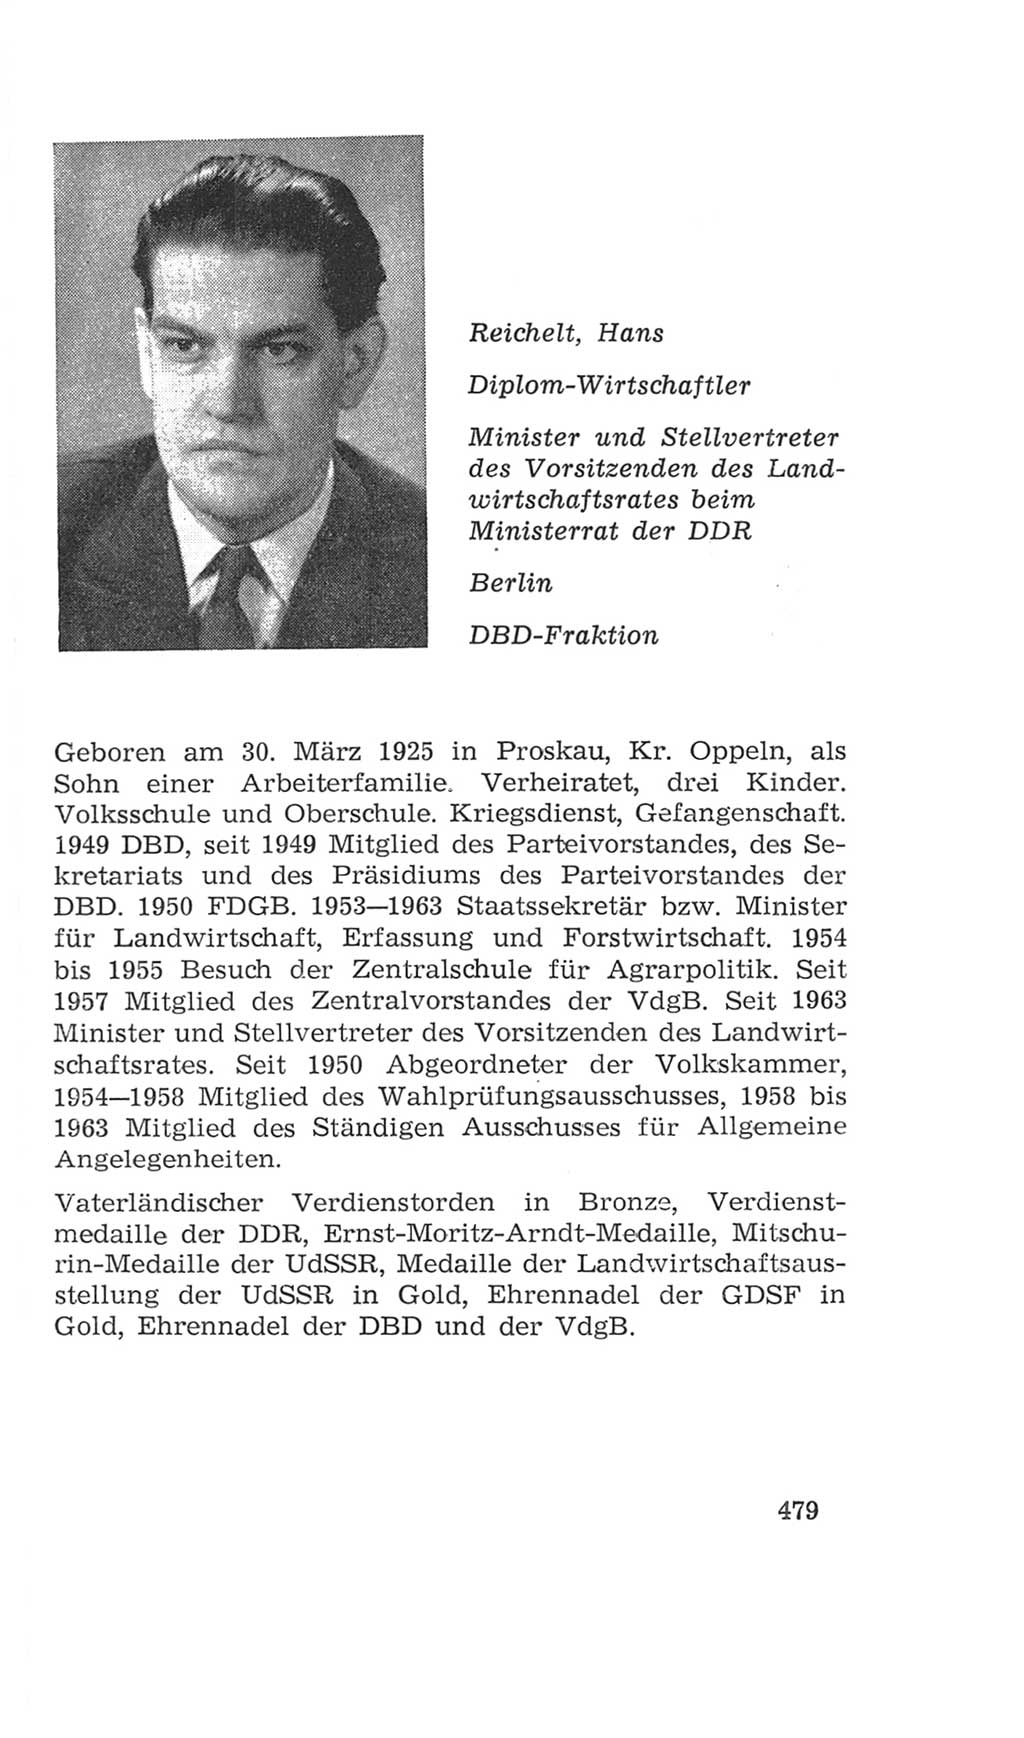 Volkskammer (VK) der Deutschen Demokratischen Republik (DDR), 4. Wahlperiode 1963-1967, Seite 479 (VK. DDR 4. WP. 1963-1967, S. 479)